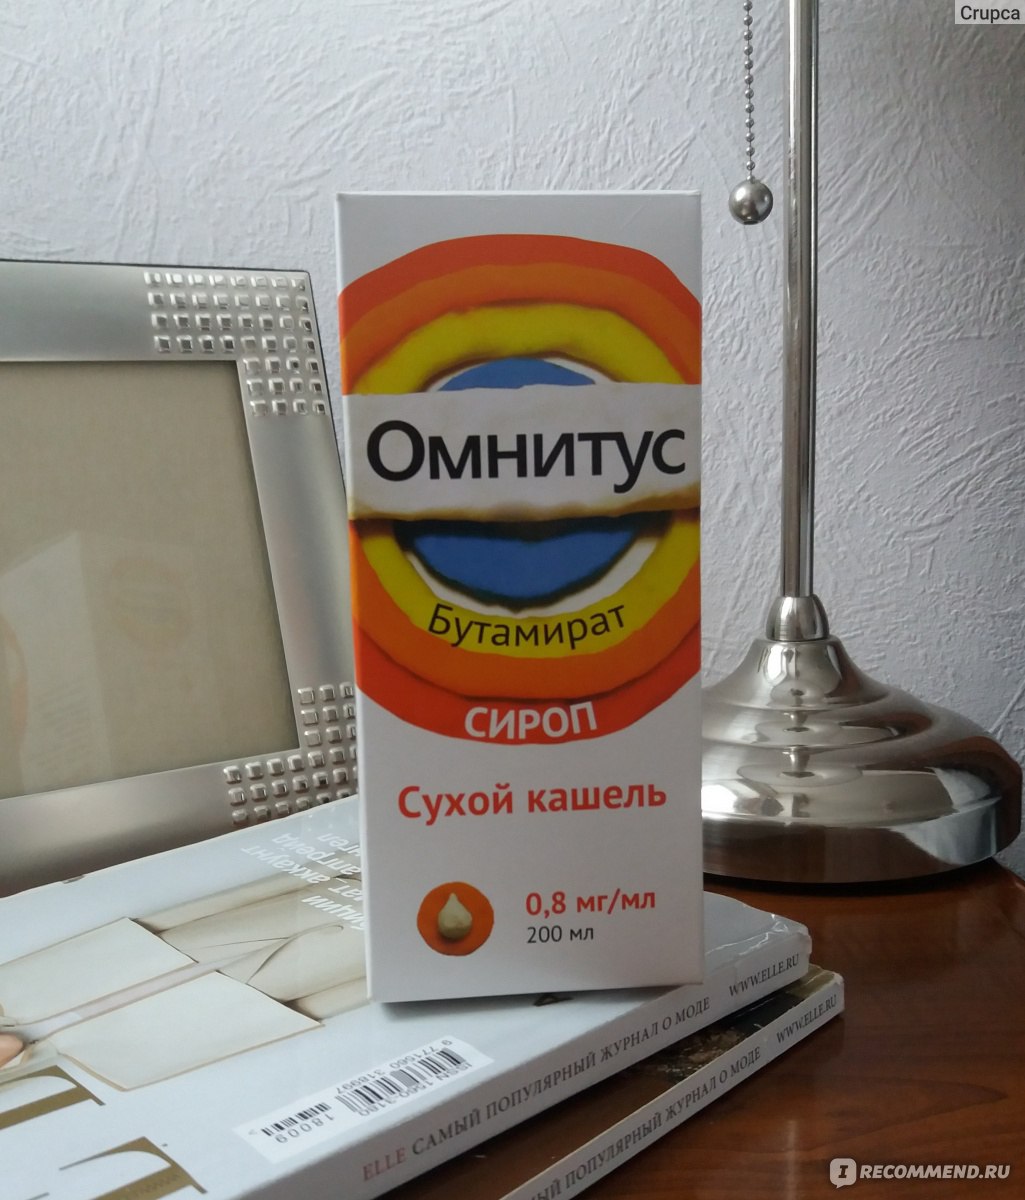 Купить Омнитус В Таганроге